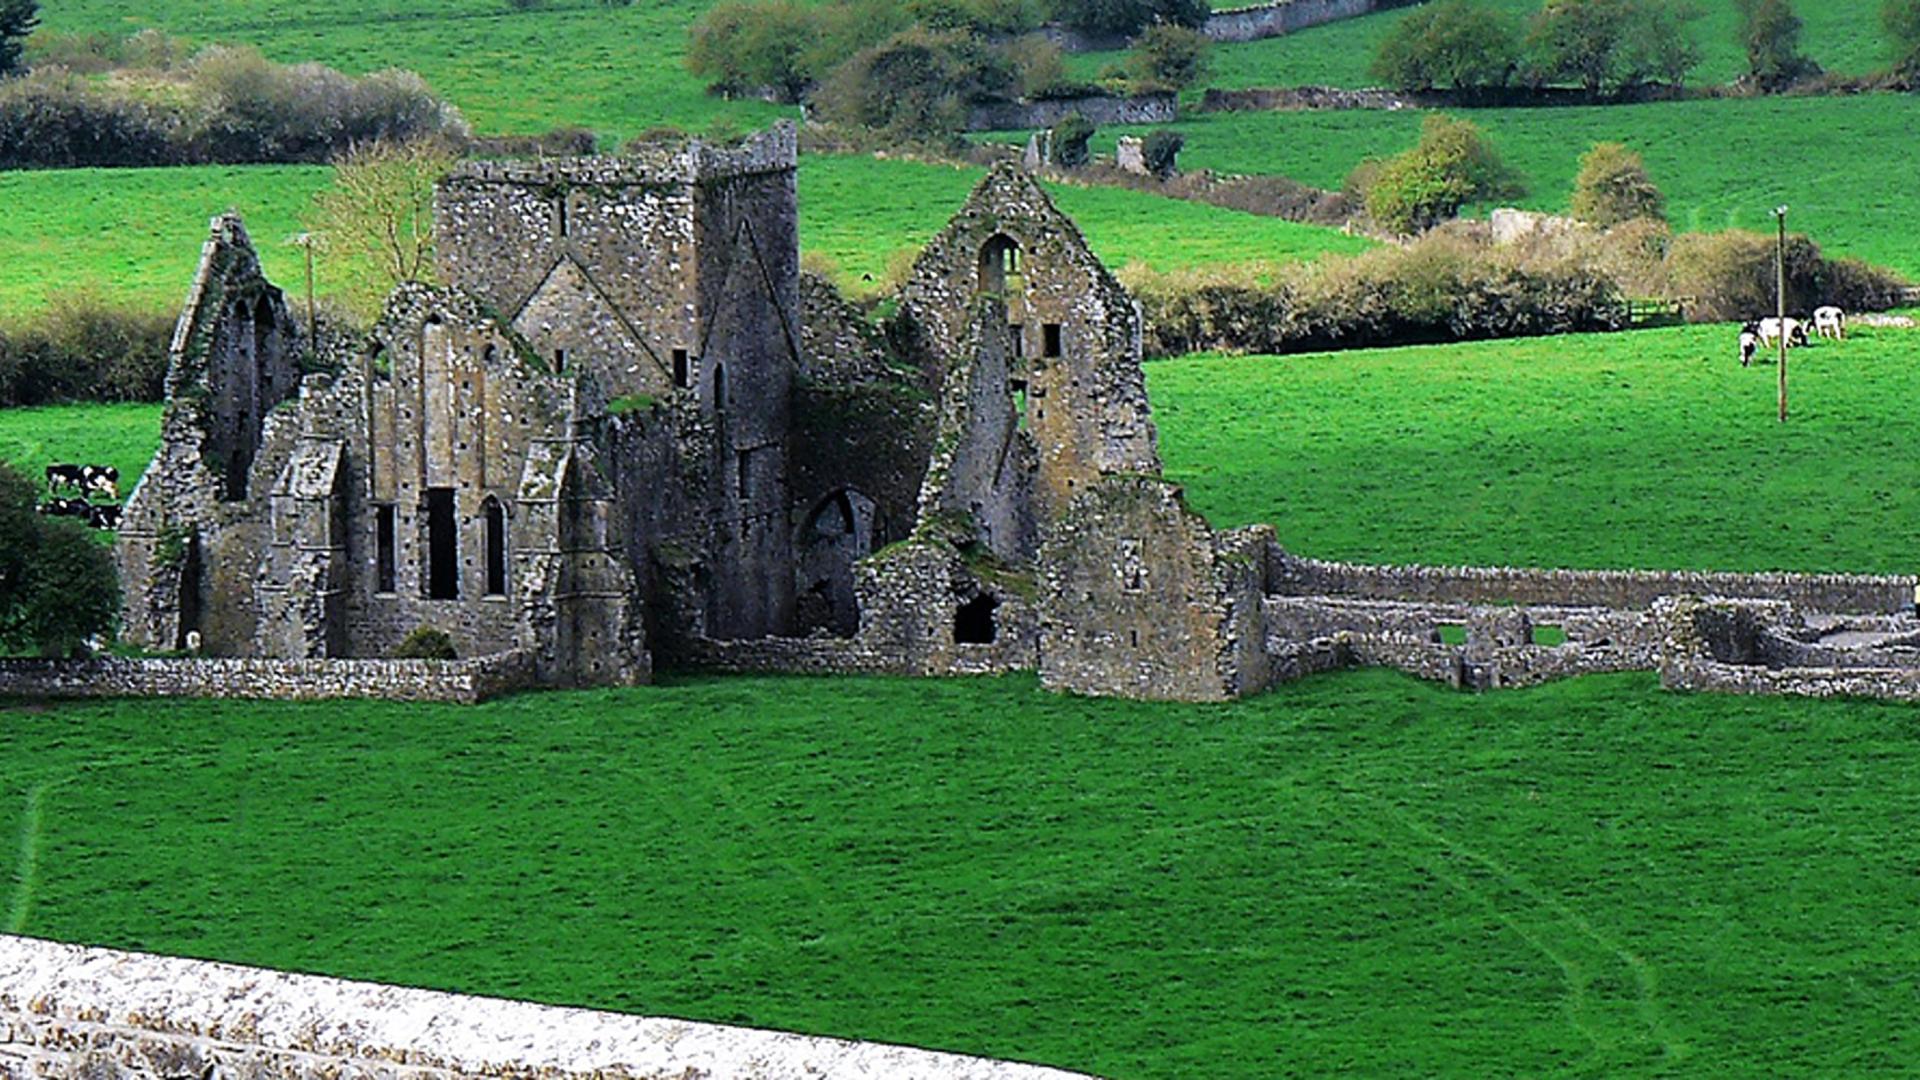 Landscape in Ireland showing castle